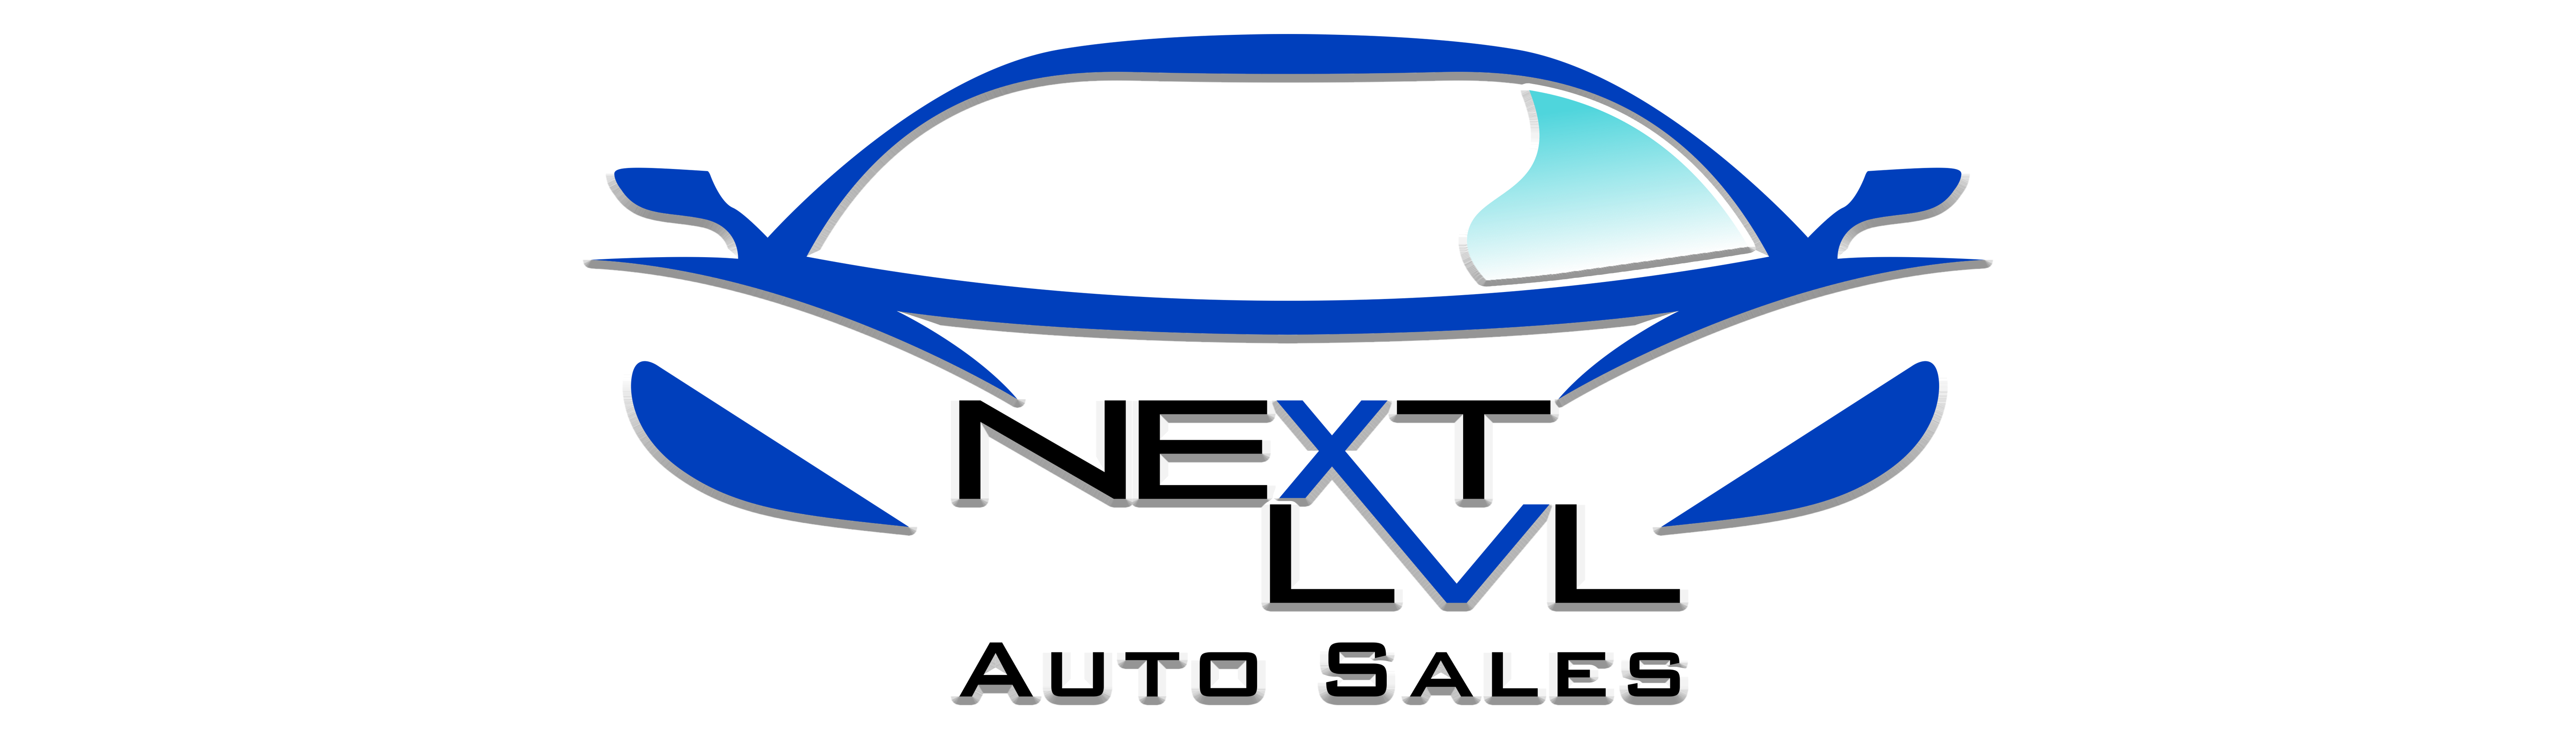 Next LVL Auto Sales